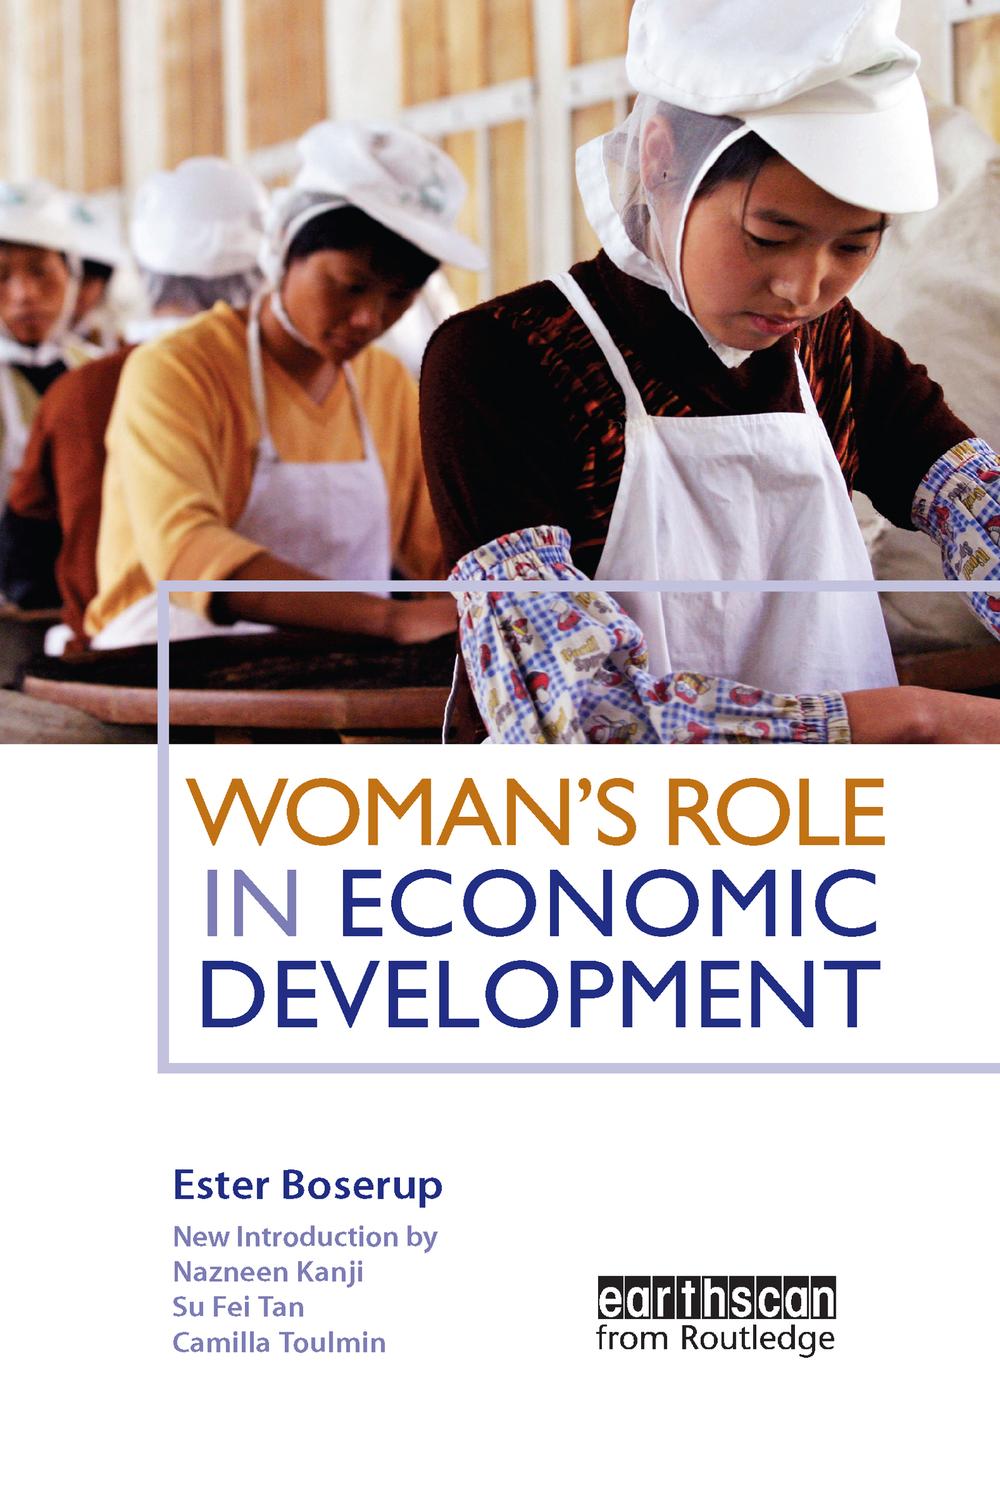 Woman's Role in Economic Development - Ester Boserup, Su Fei Tan, Camilla Toulmin